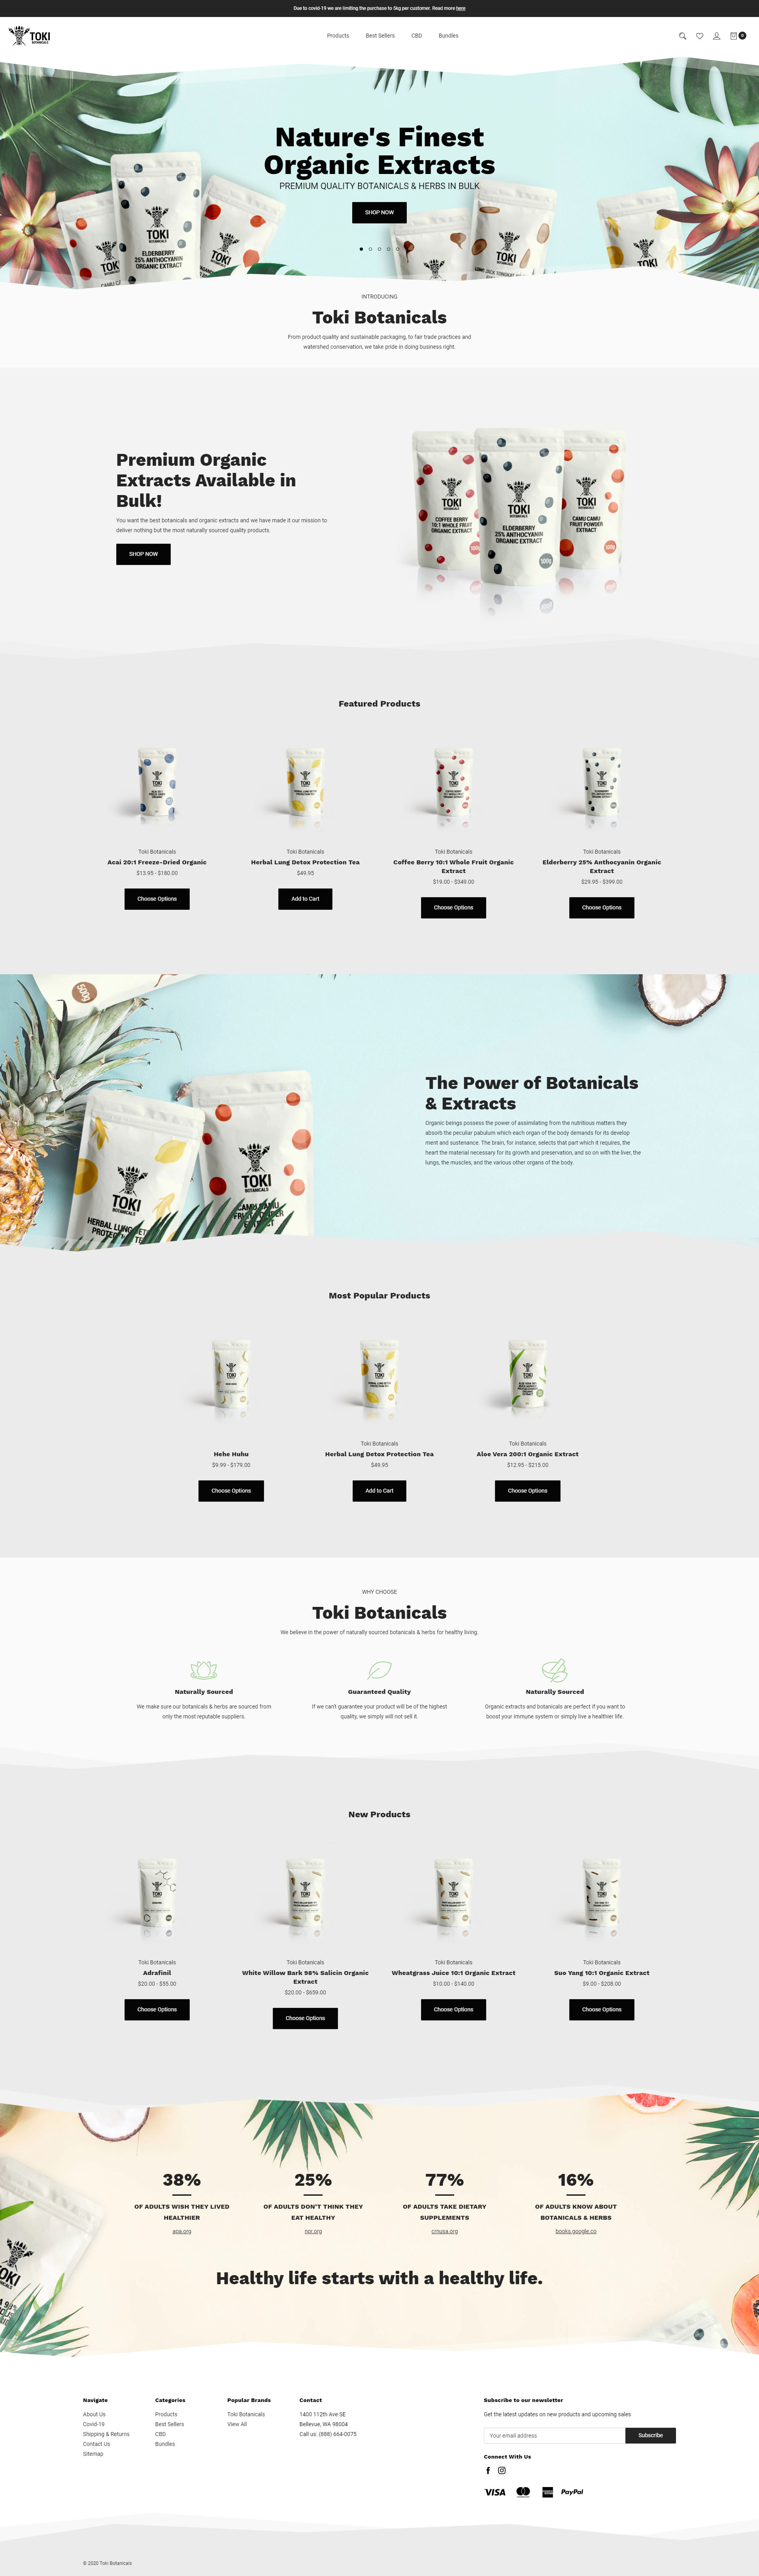 Toki Botanicals Homepage